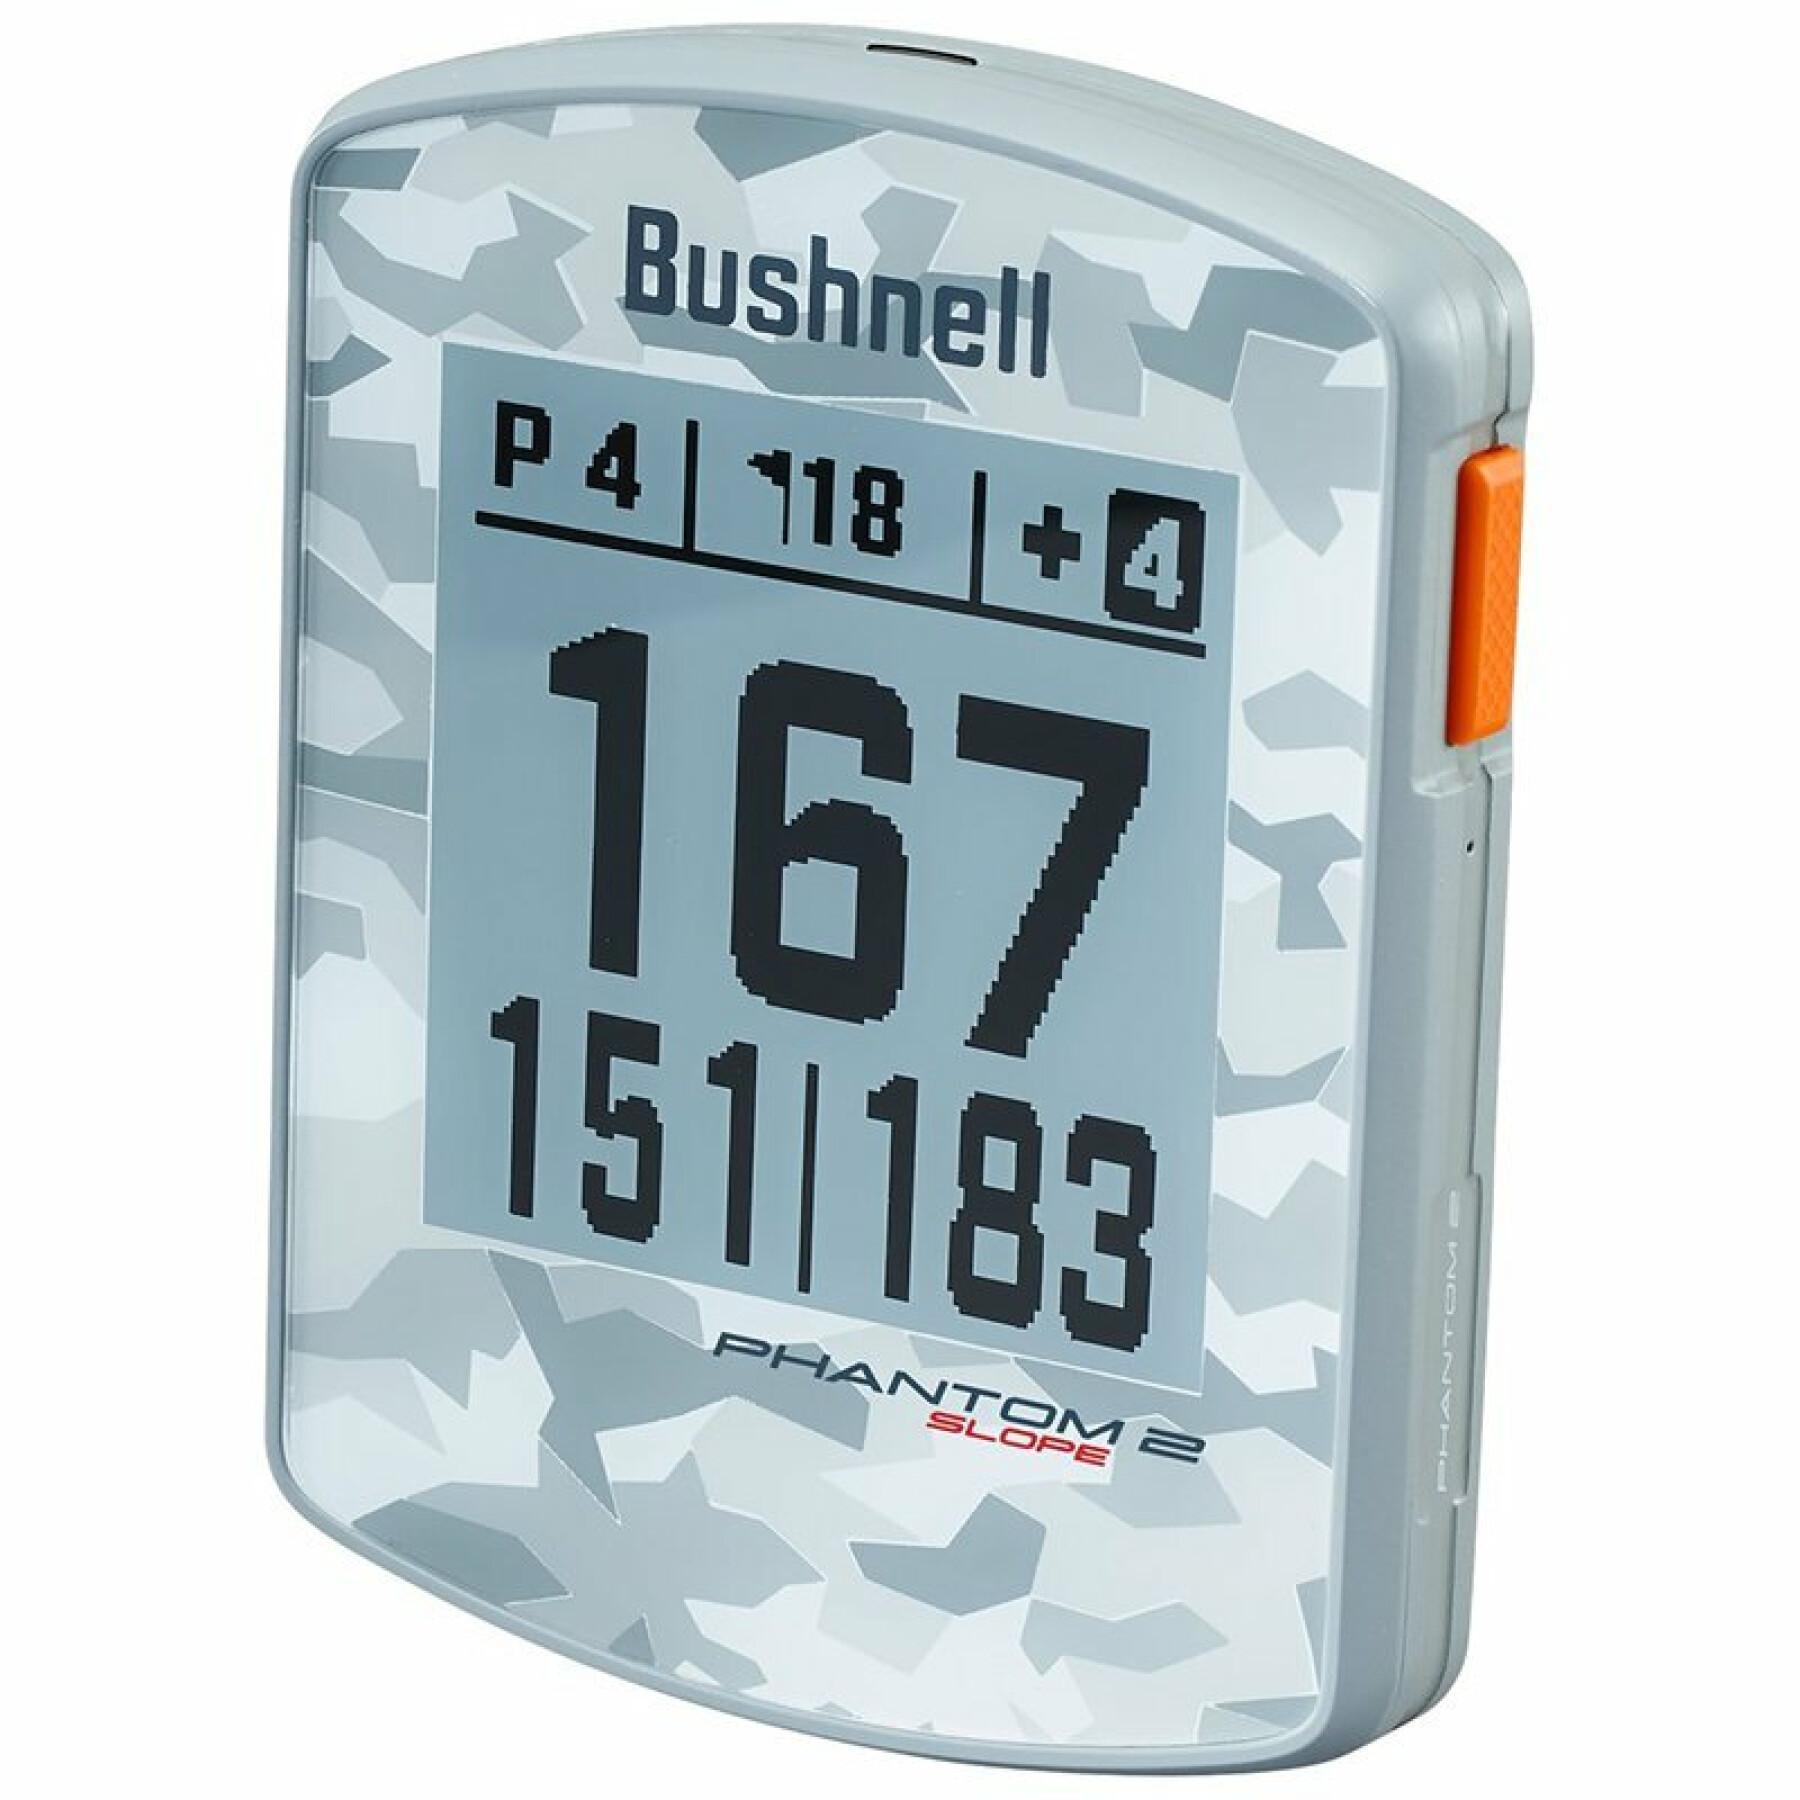 Montre GPS Bushnell Golf Phantom 2 Slope